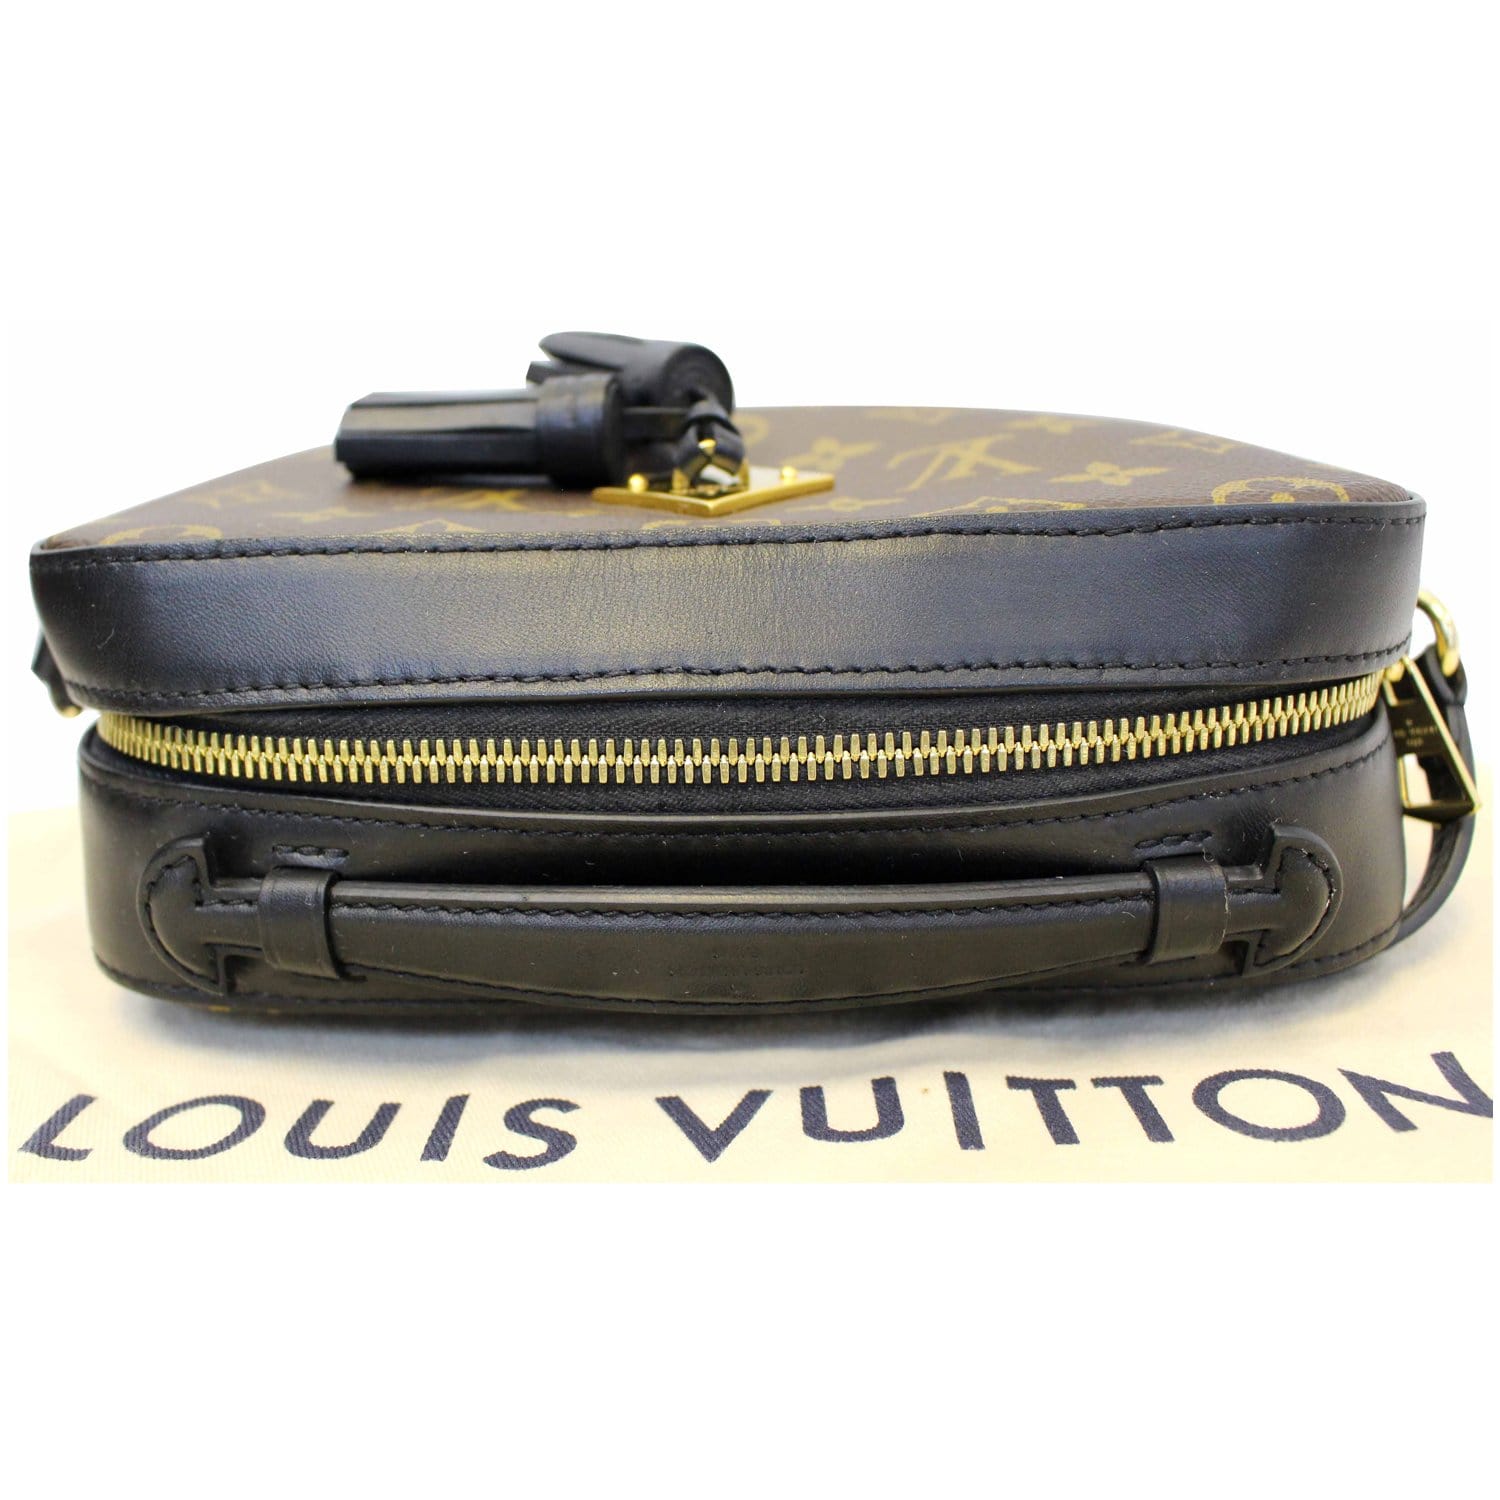 Sac à main Louis Vuitton Salsa en toile monogram marron et cuir naturel, Brown Louis Vuitton Monogram Saintonge Crossbody Bag